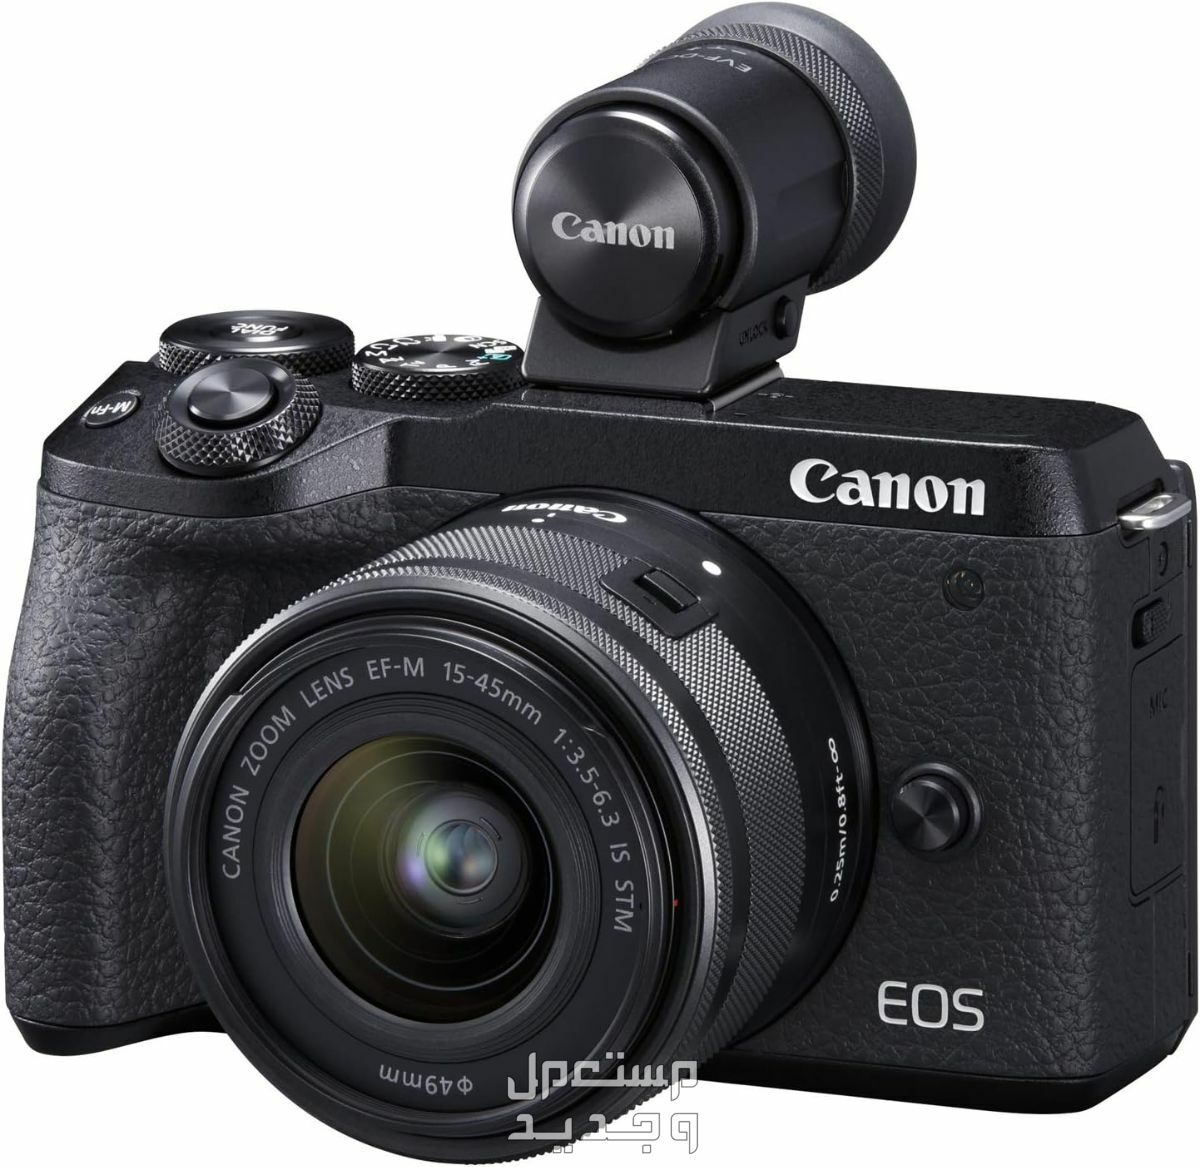 سعر ومميزات ومواصفات أرخص 5 كاميرات تصوير من كانون في مصر سعر كاميرا Canon EOS M6 Mark II